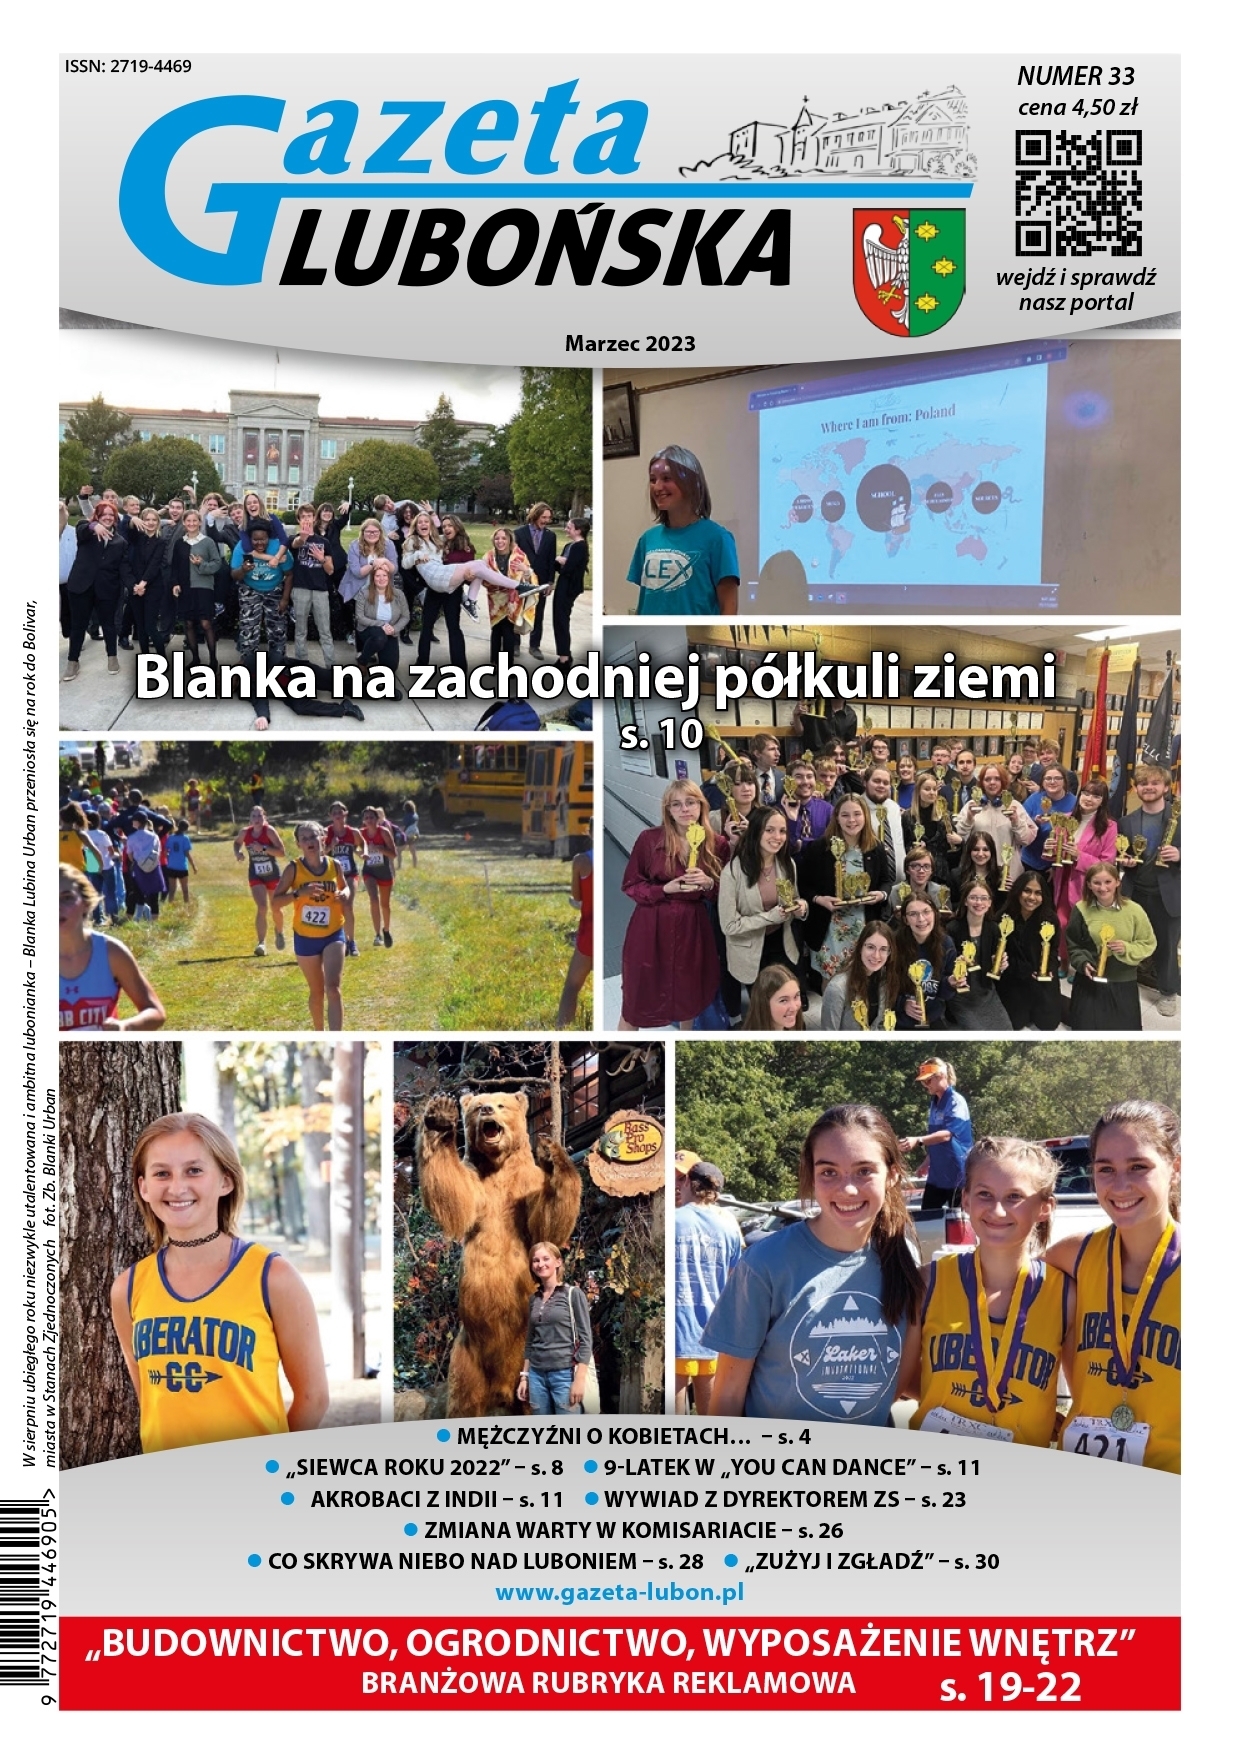 Gazeta Lubońska - wydanie marzec 2023 r. - okładka